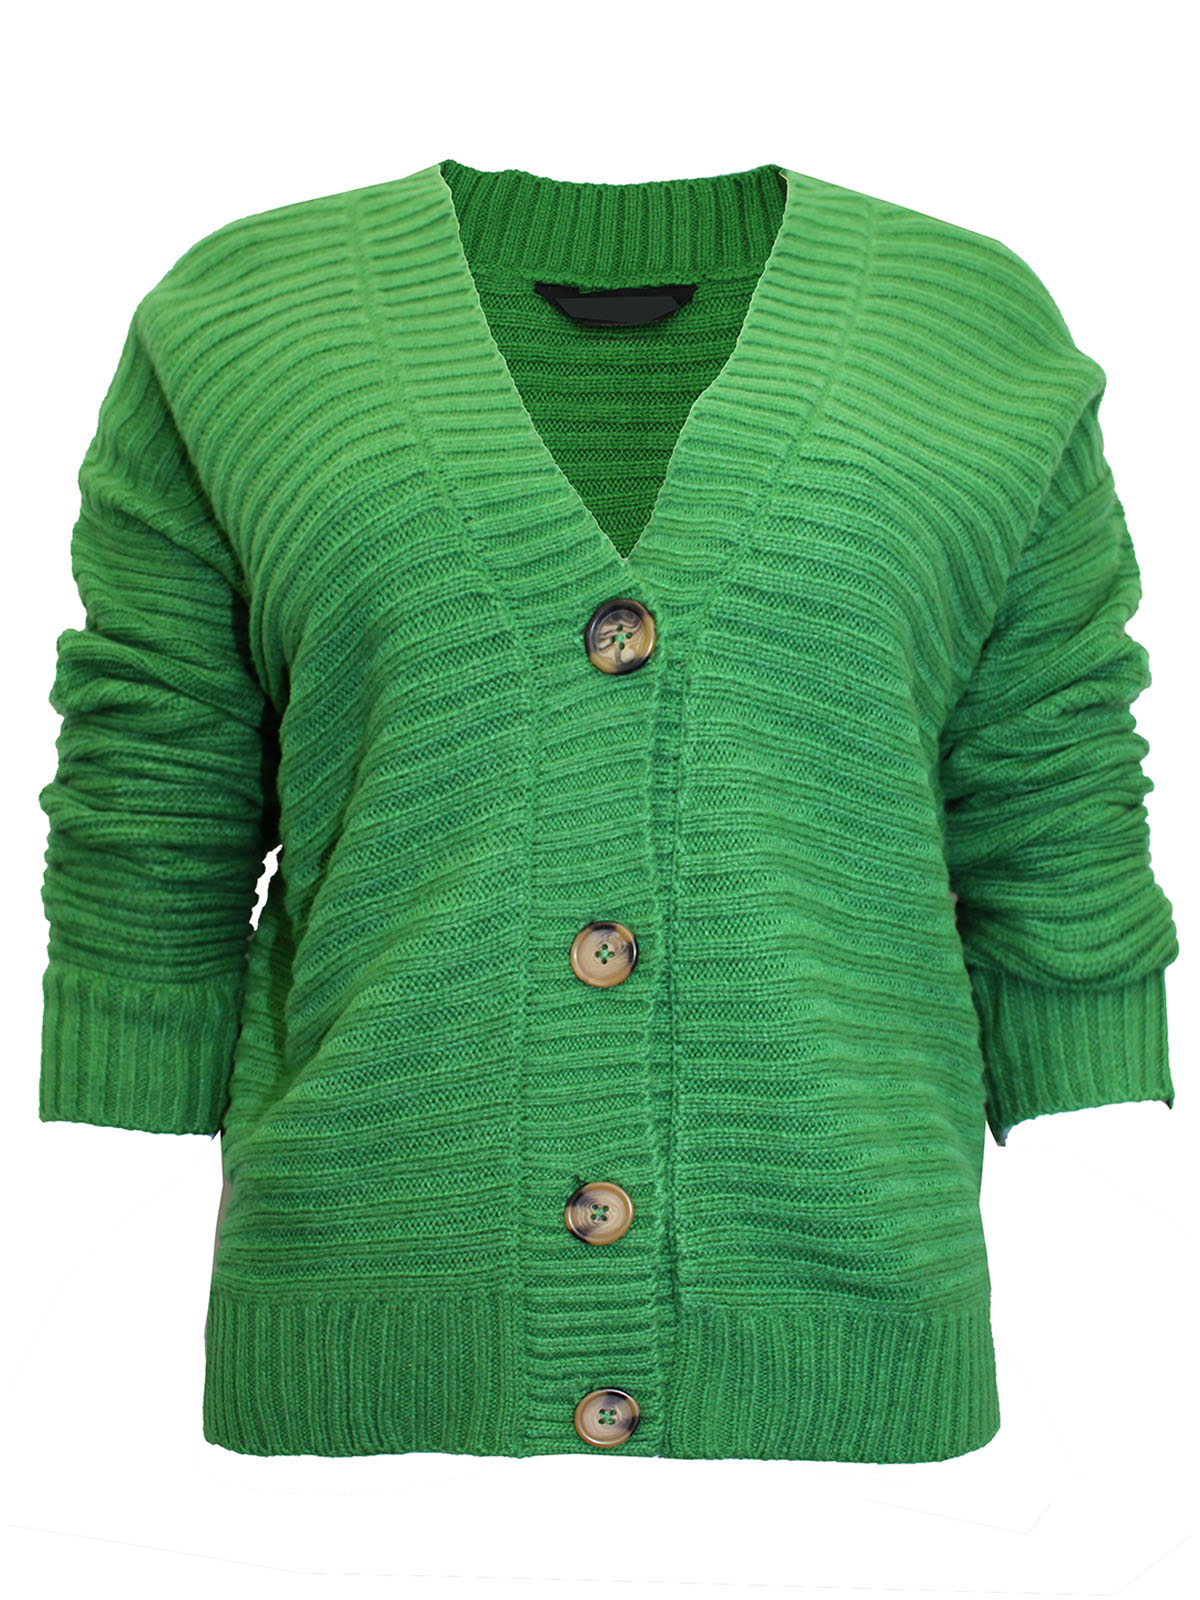 Ulla Popken Green Mixed Print Knit Cotton Tunic Women's Plus Size 32/3 -  beyond exchange